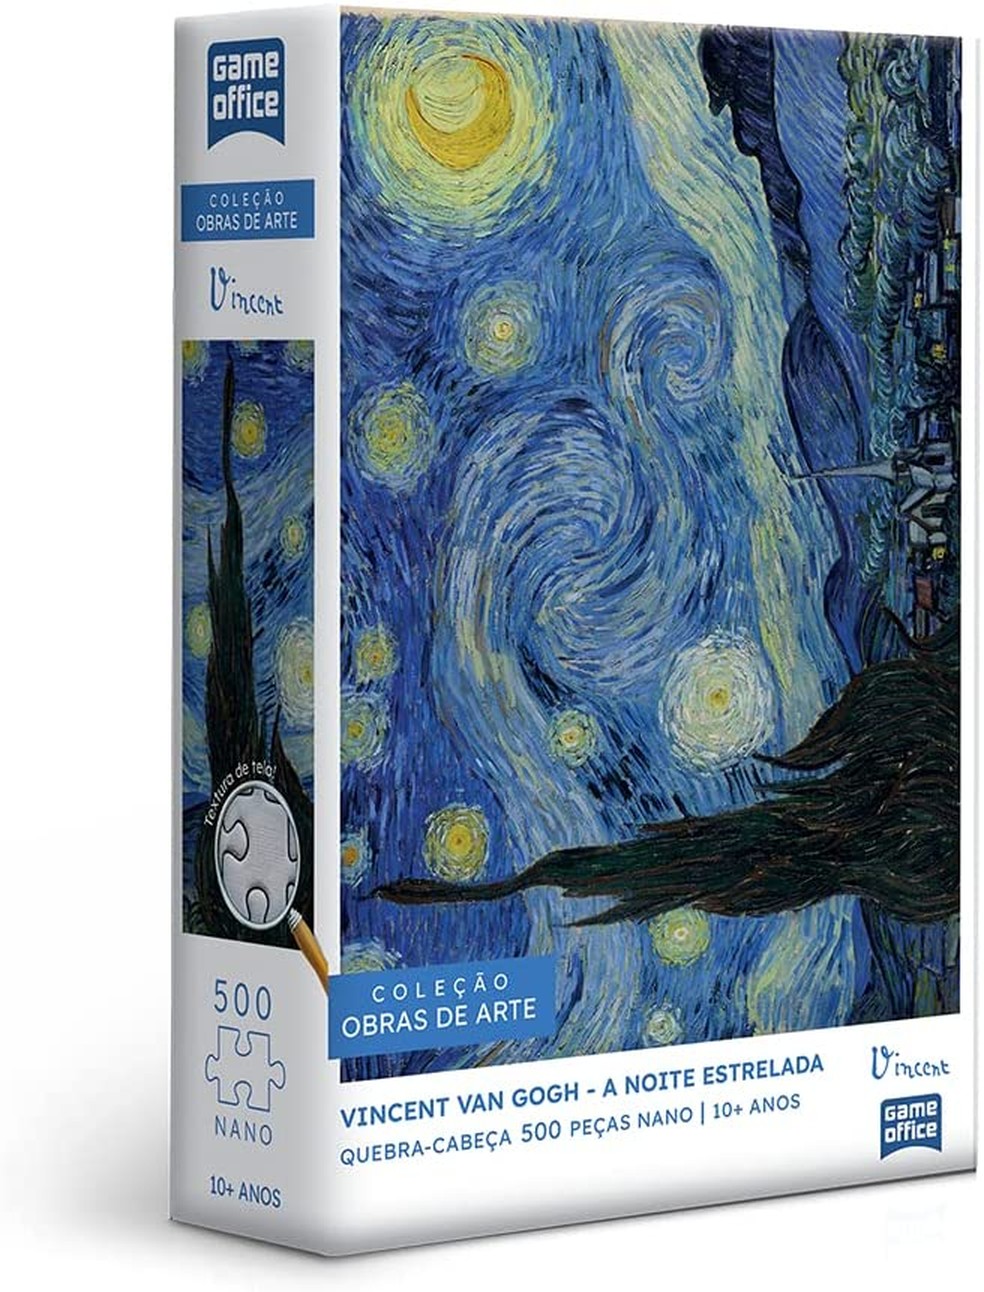 Vincent Van Gogh: A Noite Estrelada - 500 peças nano - disponível na Amazon — Foto: Divulgação